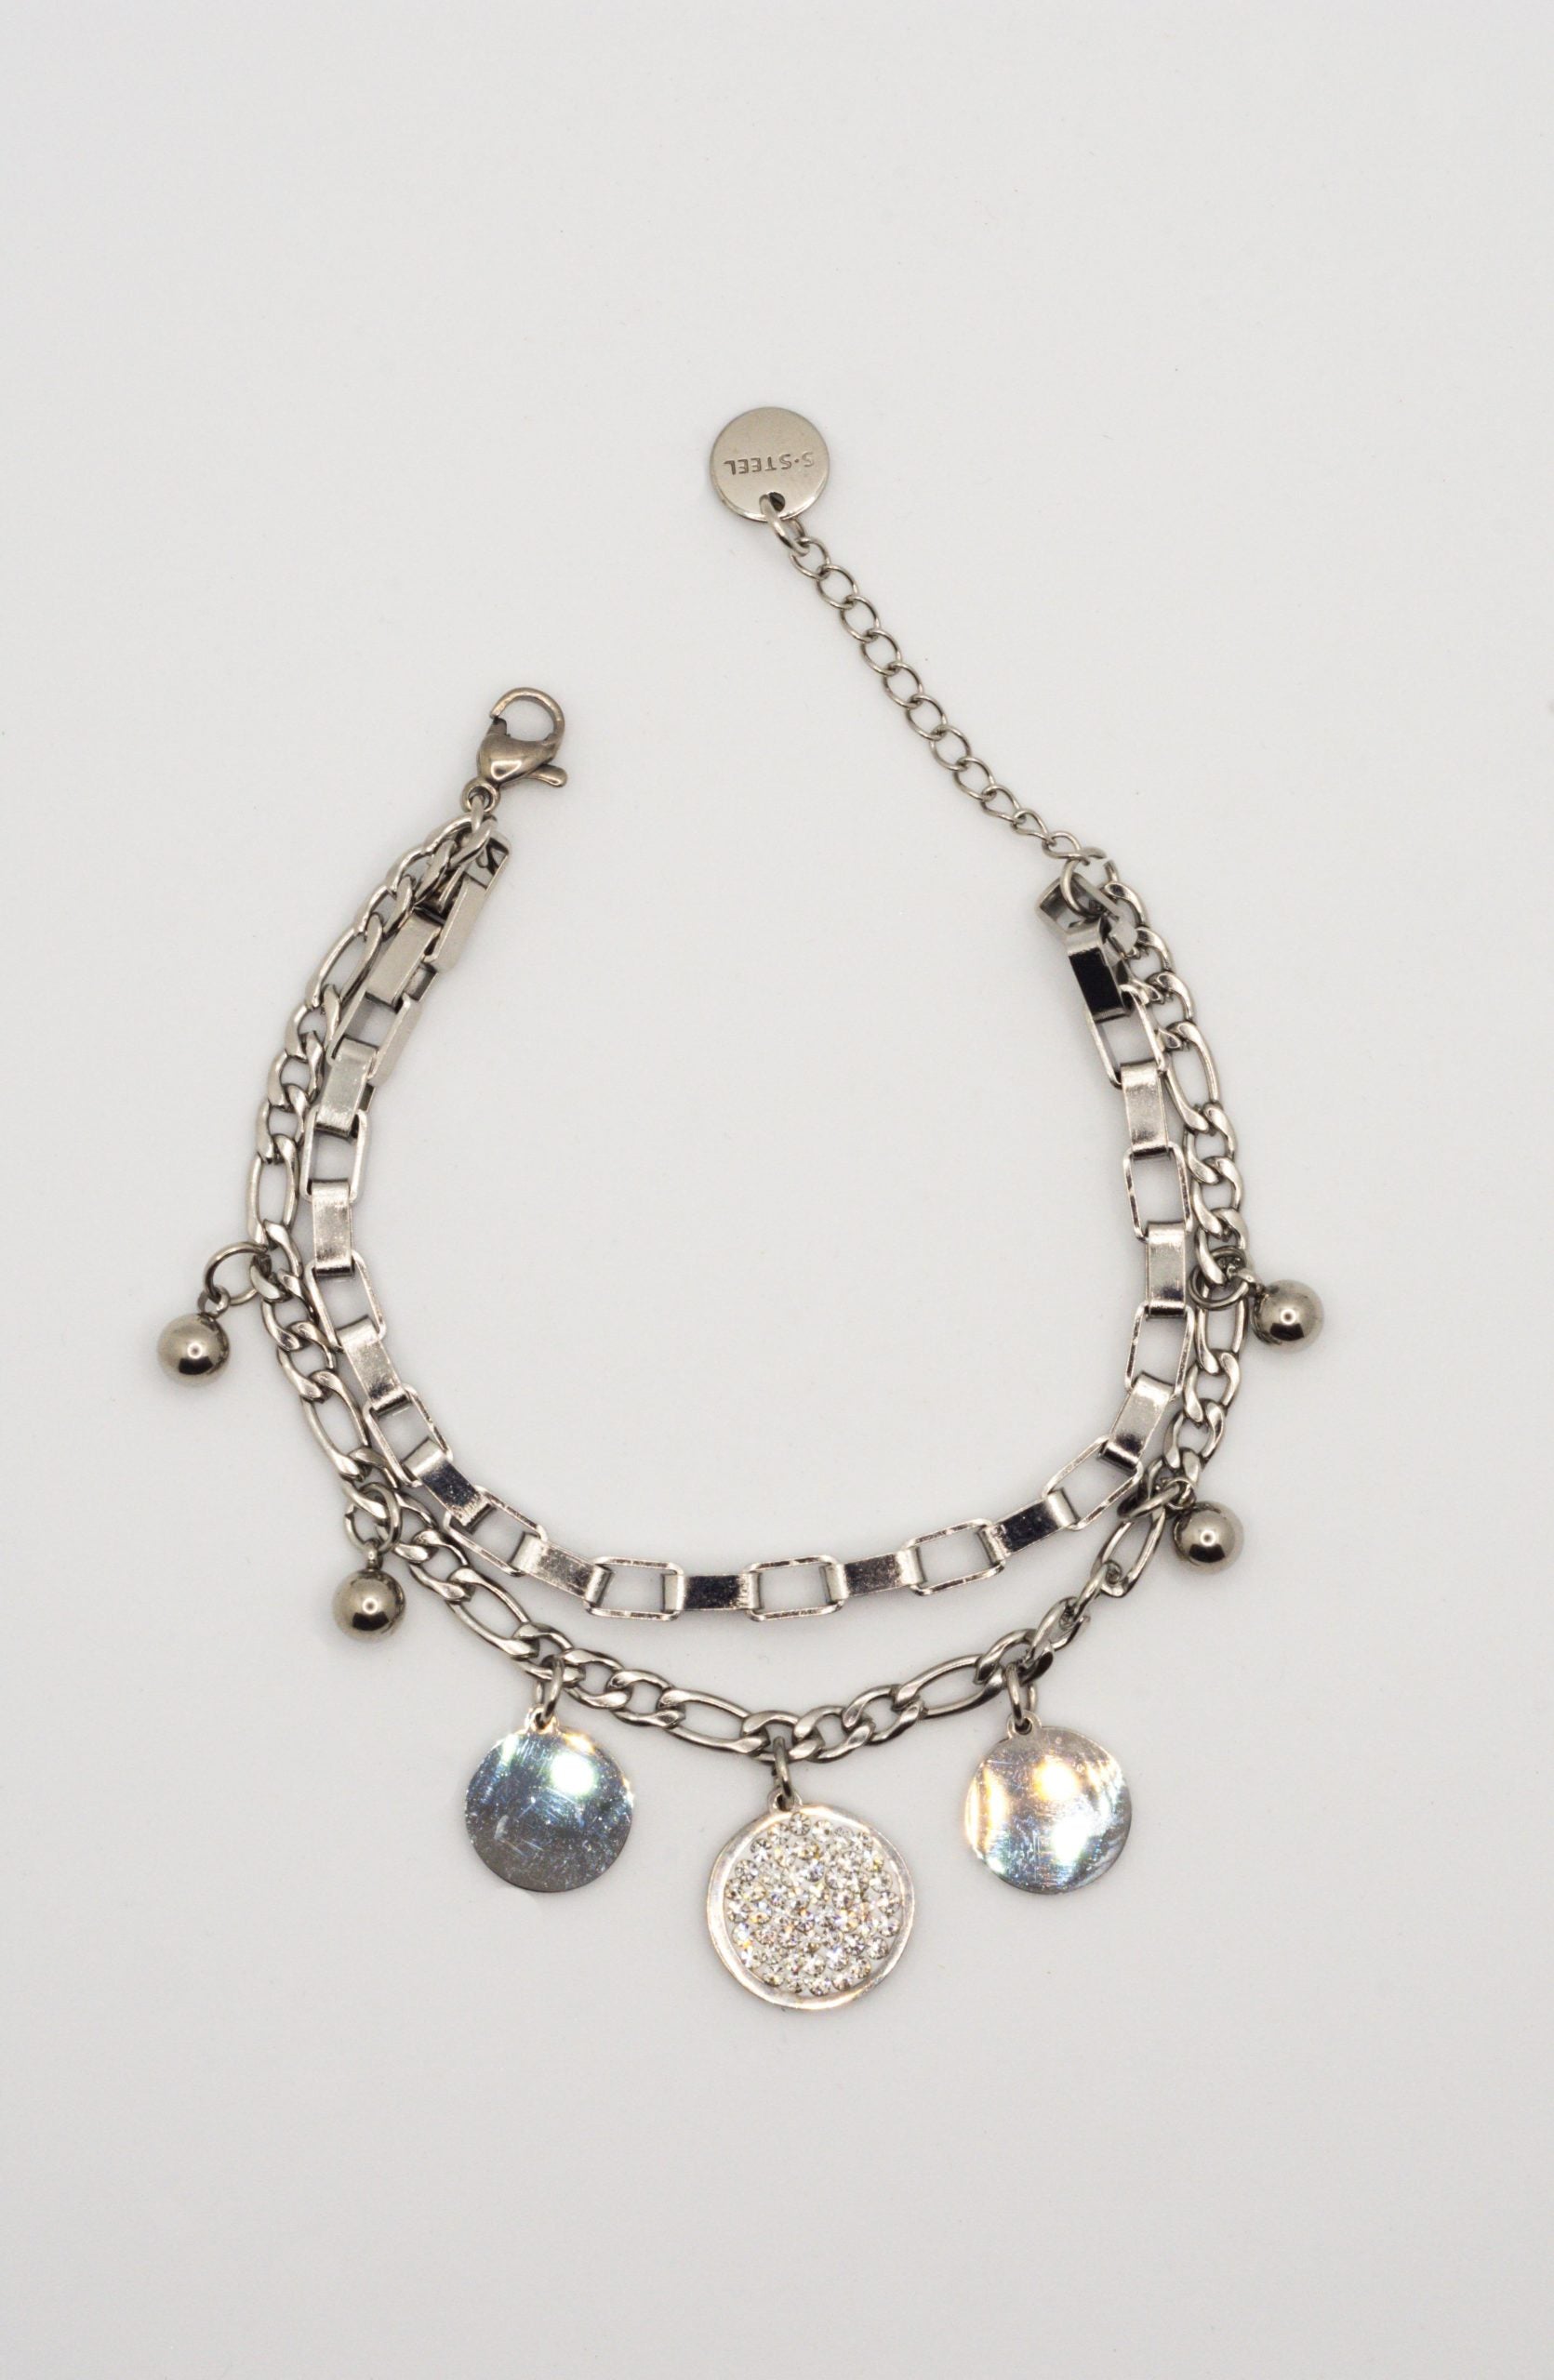 cry-gioielli-handmade-acciaio-jewelry-fatti-a-mano-bracciale-argento